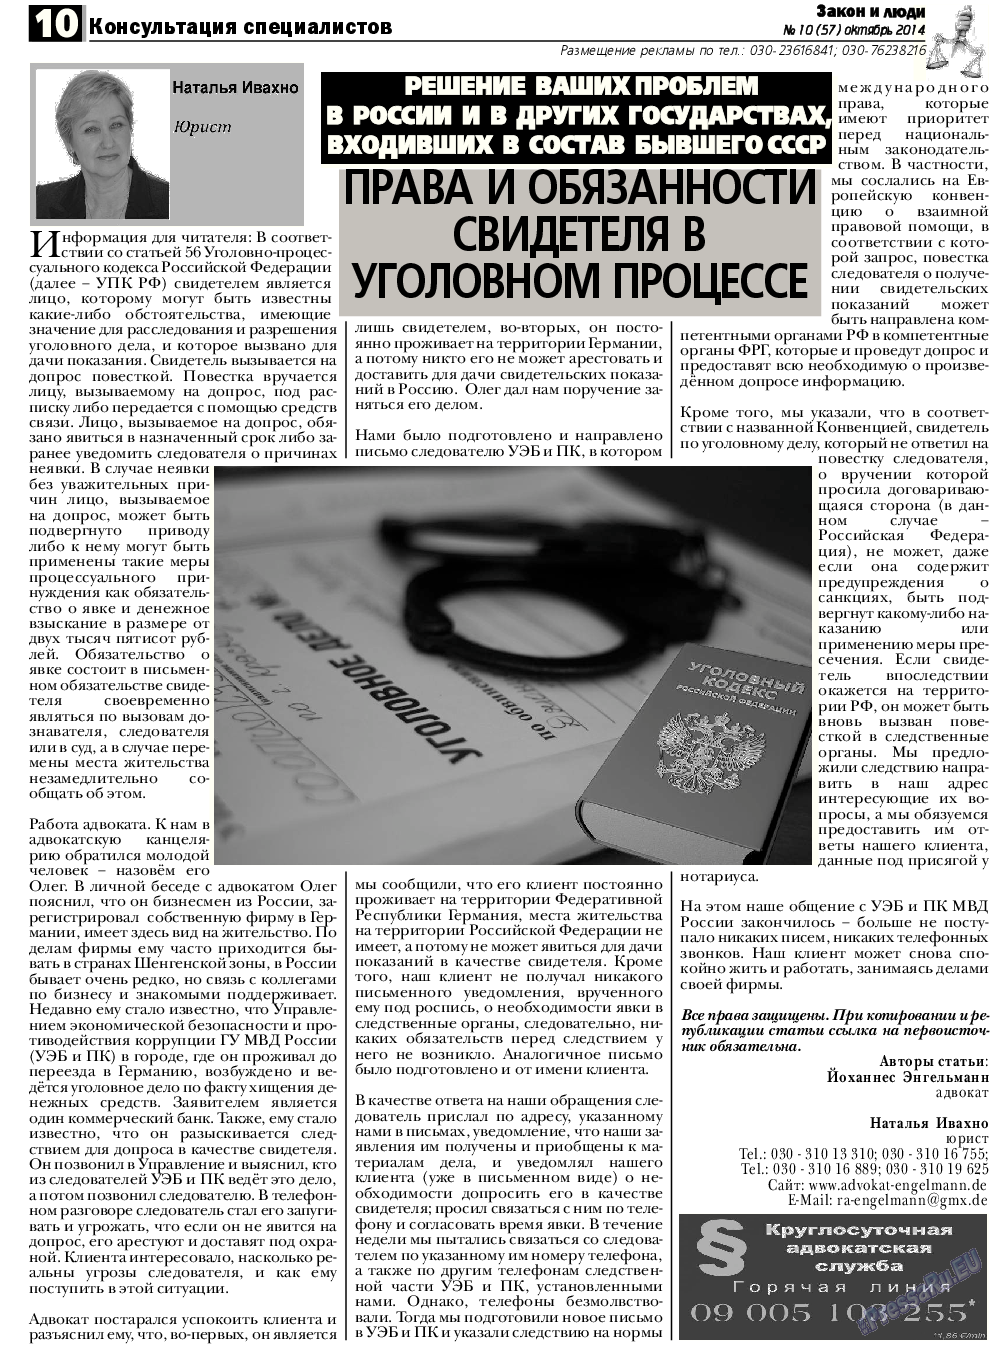 Закон и люди, газета. 2014 №10 стр.10